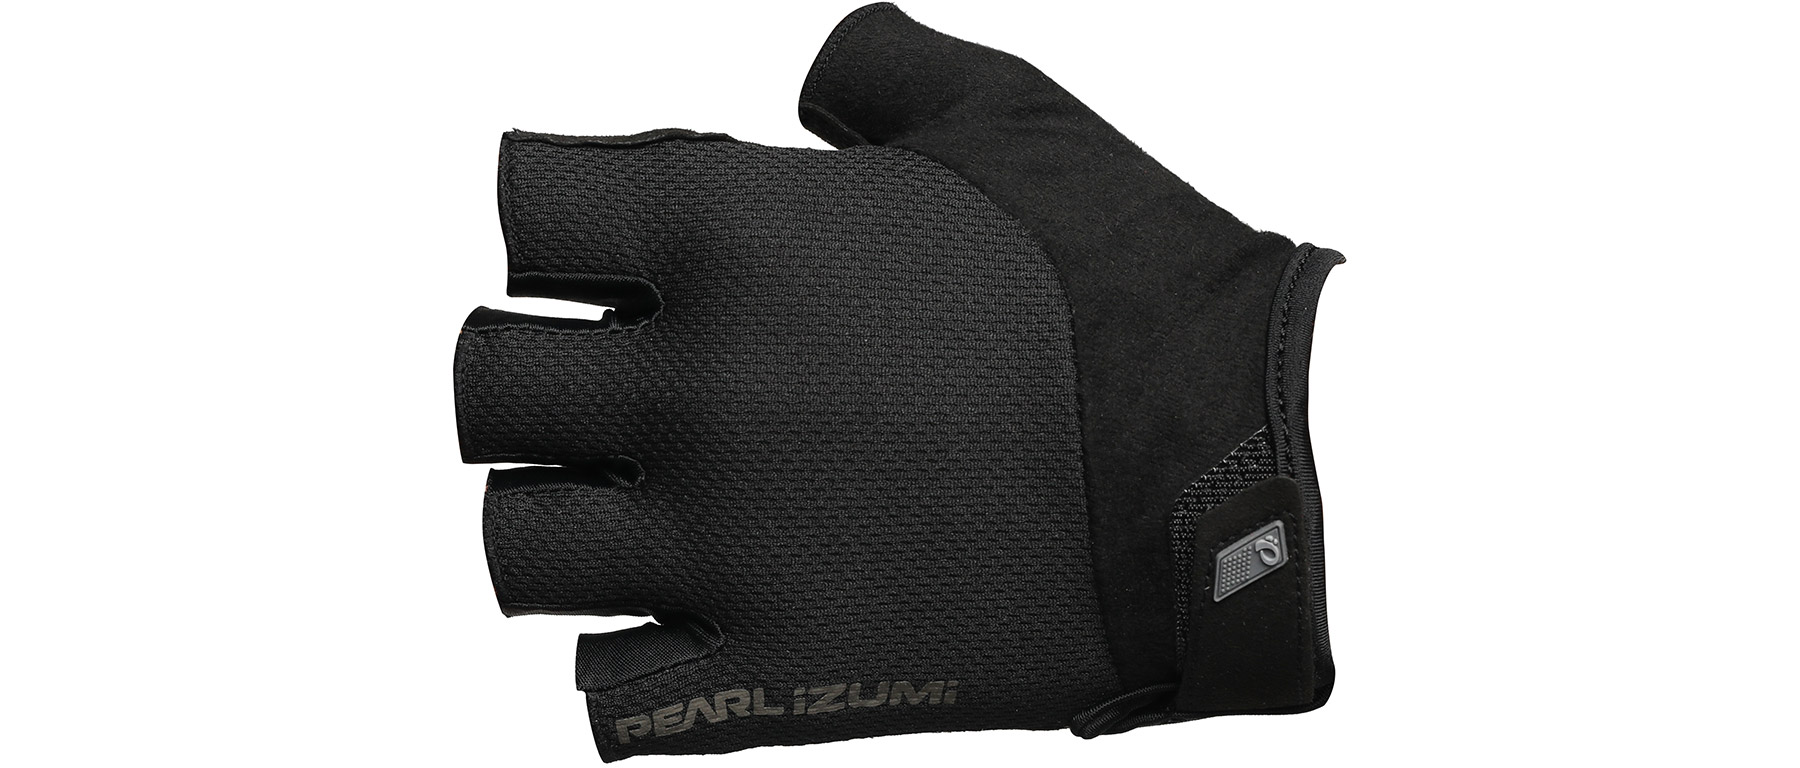 Pearl Izumi Attack Glove